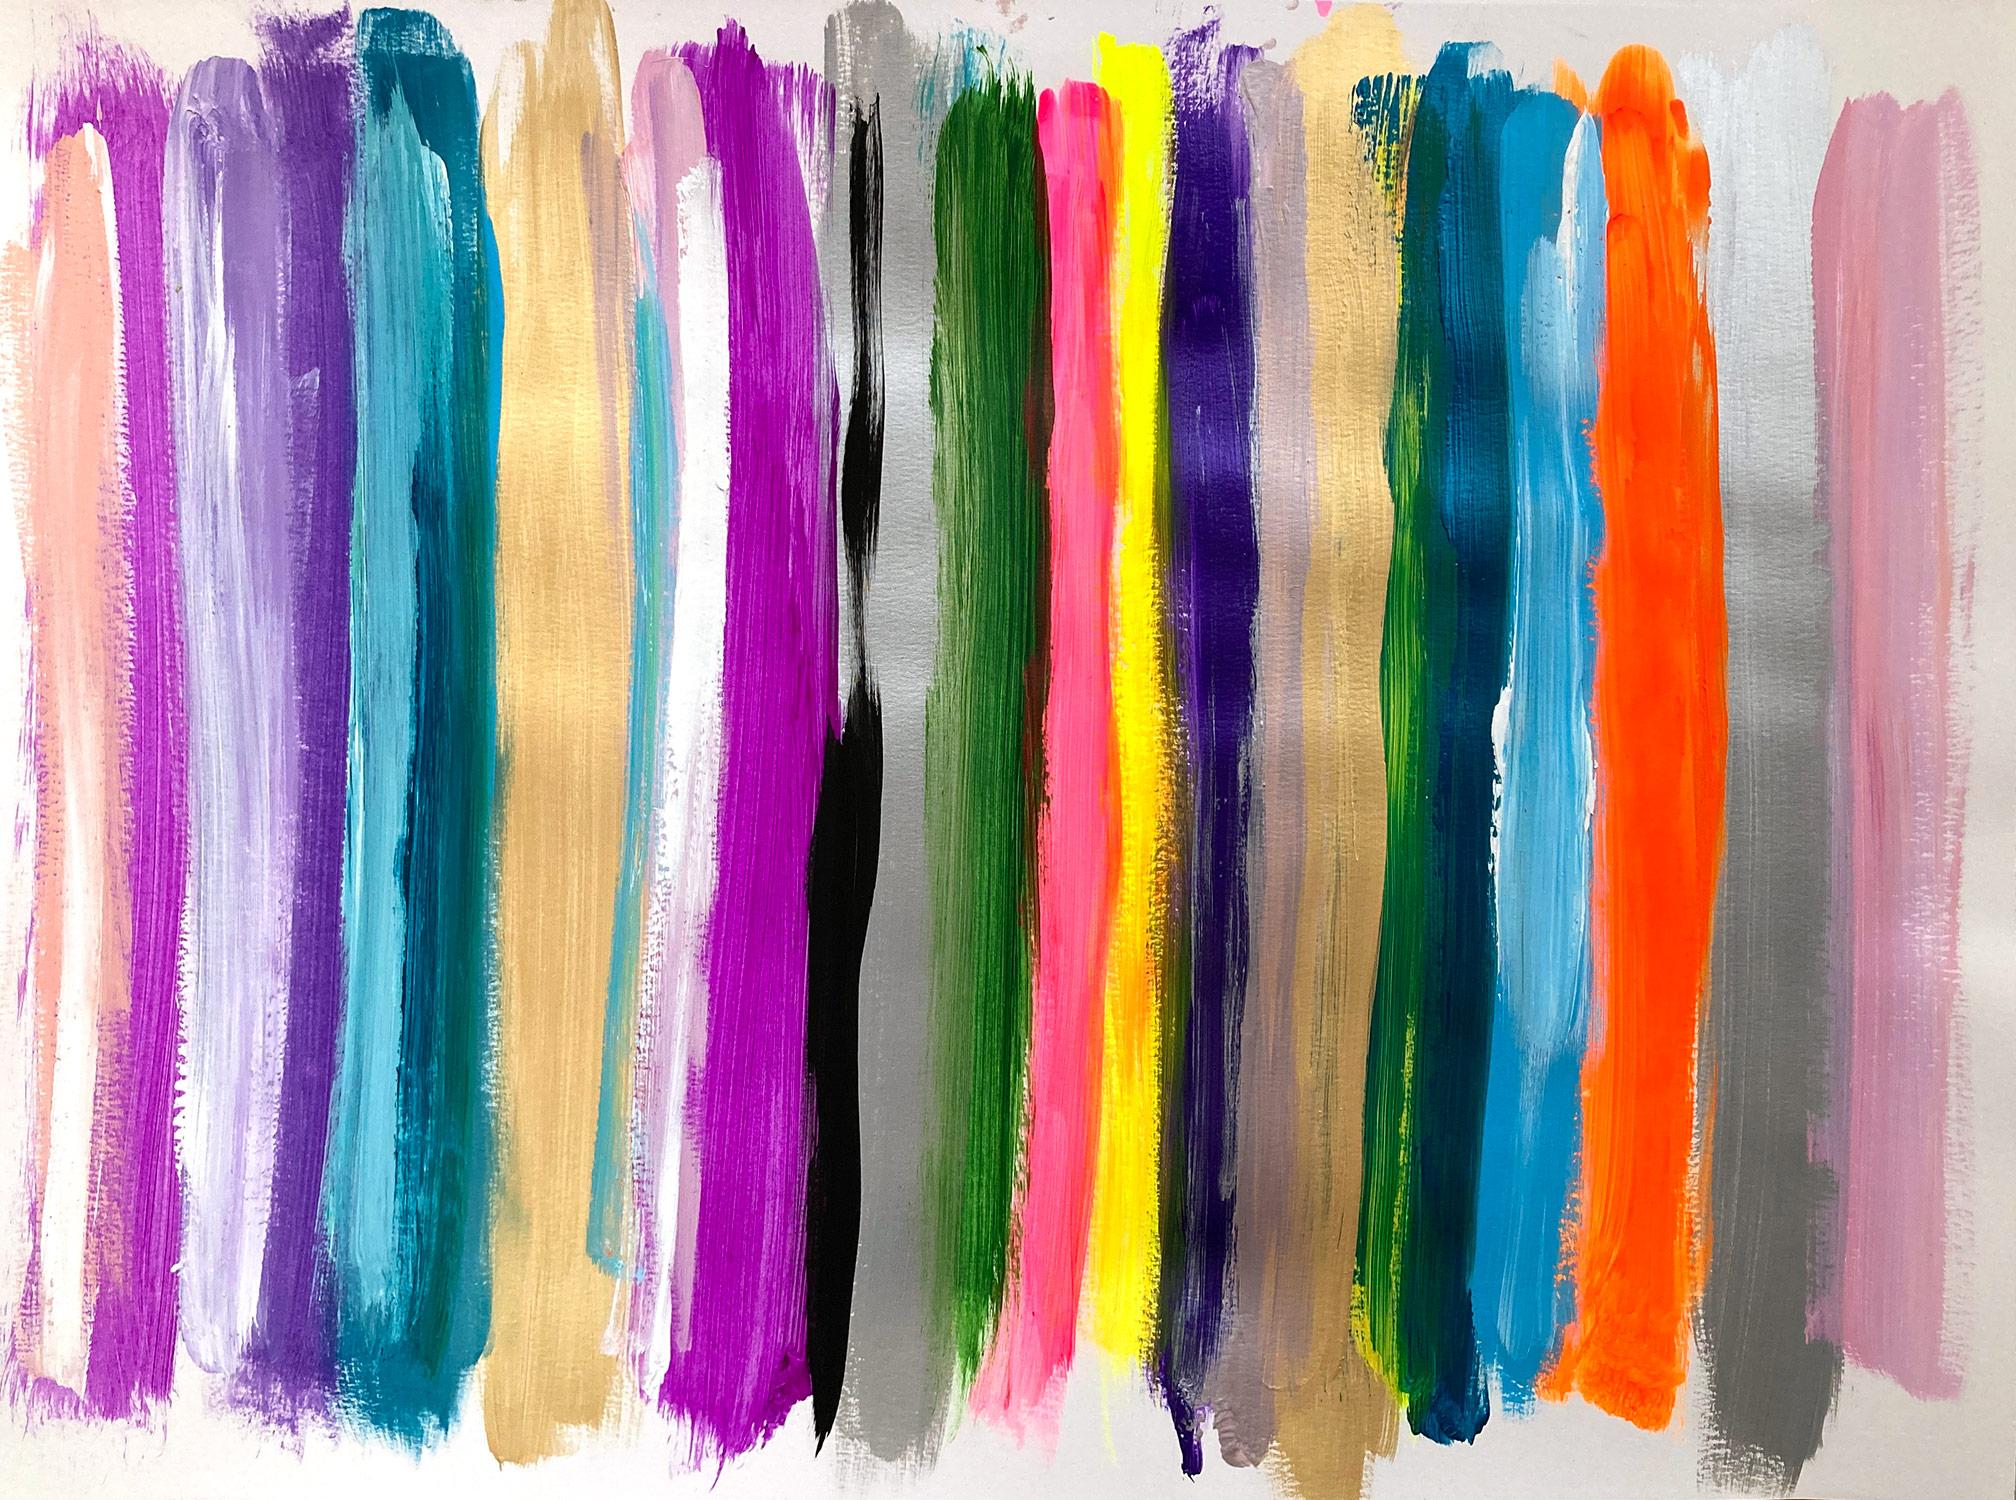 Abstract Painting Cindy Shaoul - « My Horizon - Murano » - Peinture abstraite en couleur contemporaine sur papier